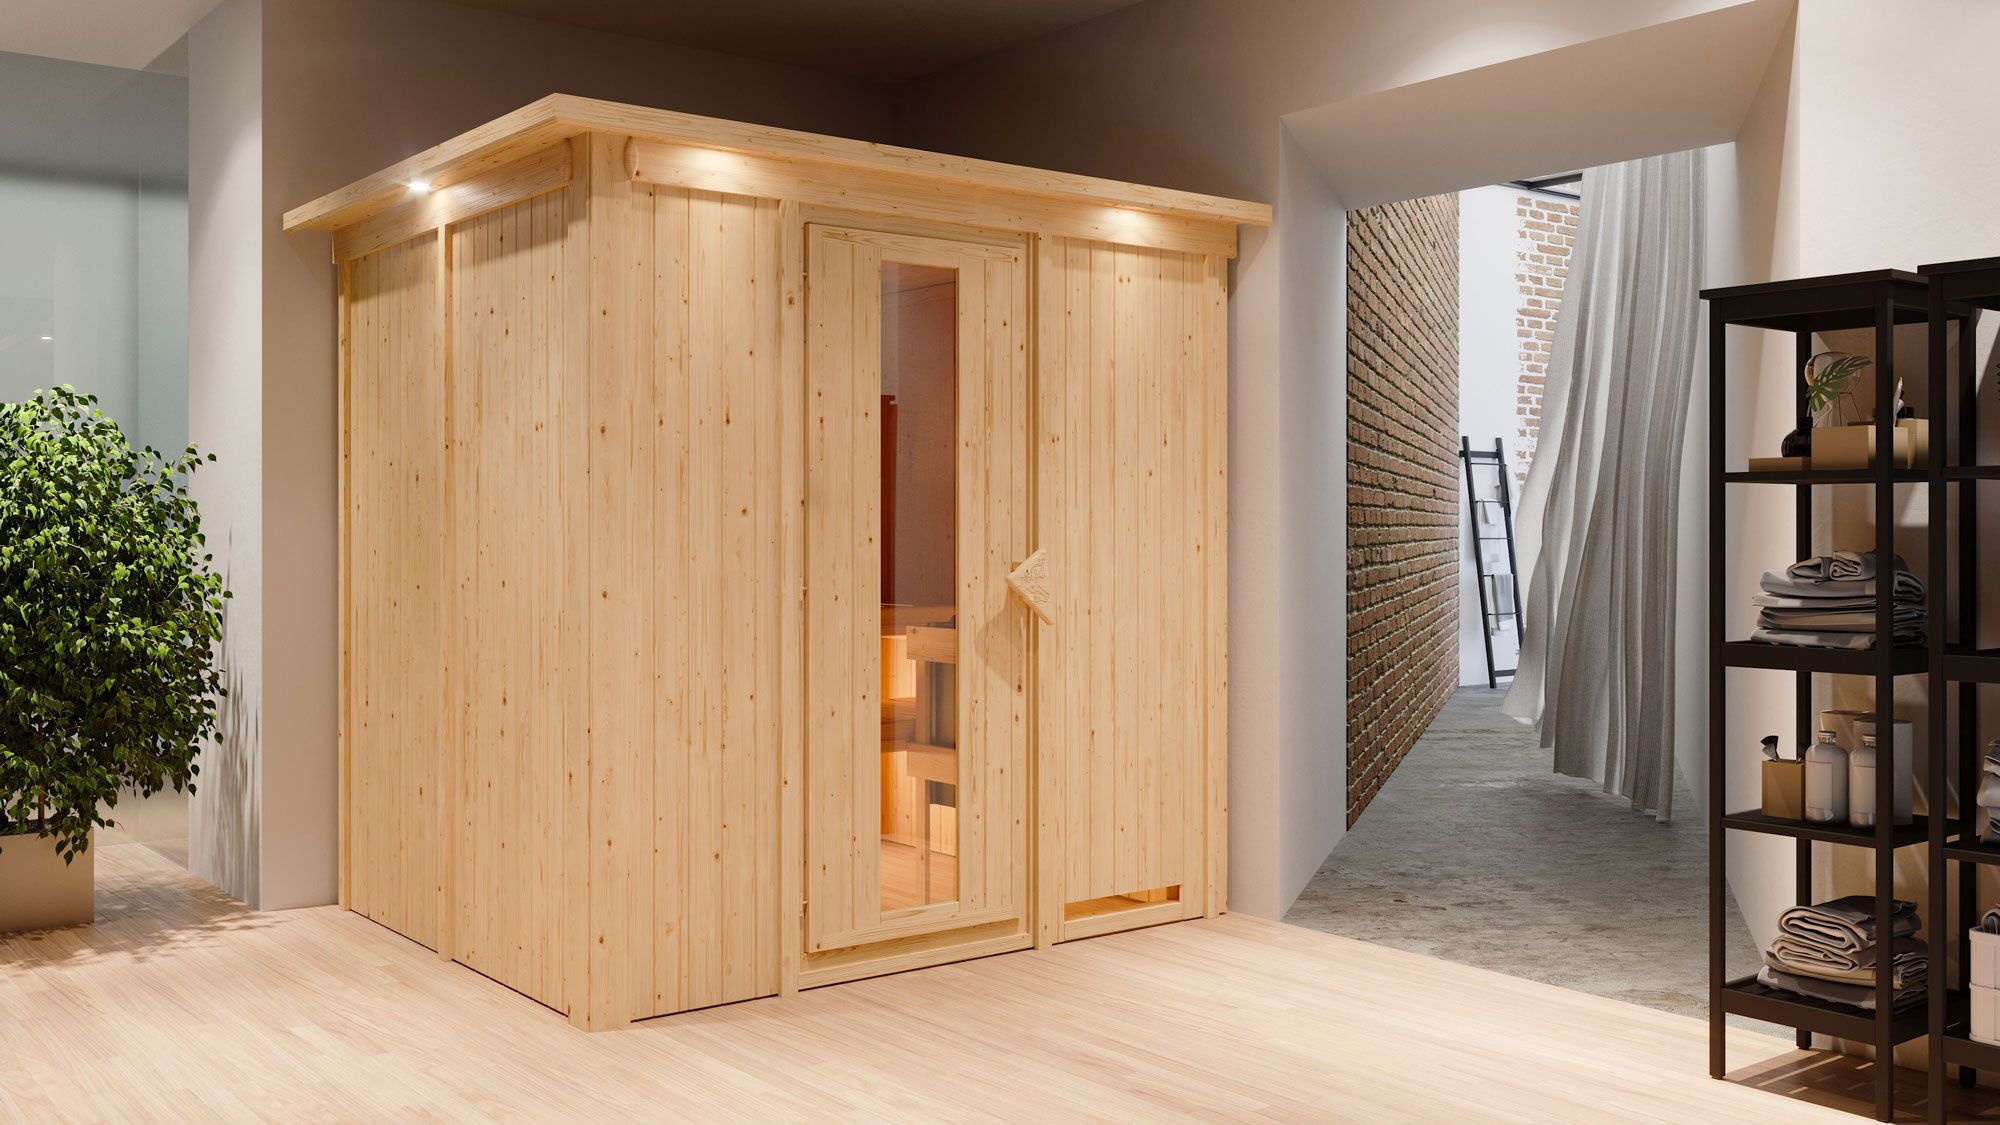 Sauna "Eemil" SET mit Energiespartür und Kranz - Farbe: Natur, Ofen BIO 9 kW - 210 x 184 x 202 cm (B x T x H)